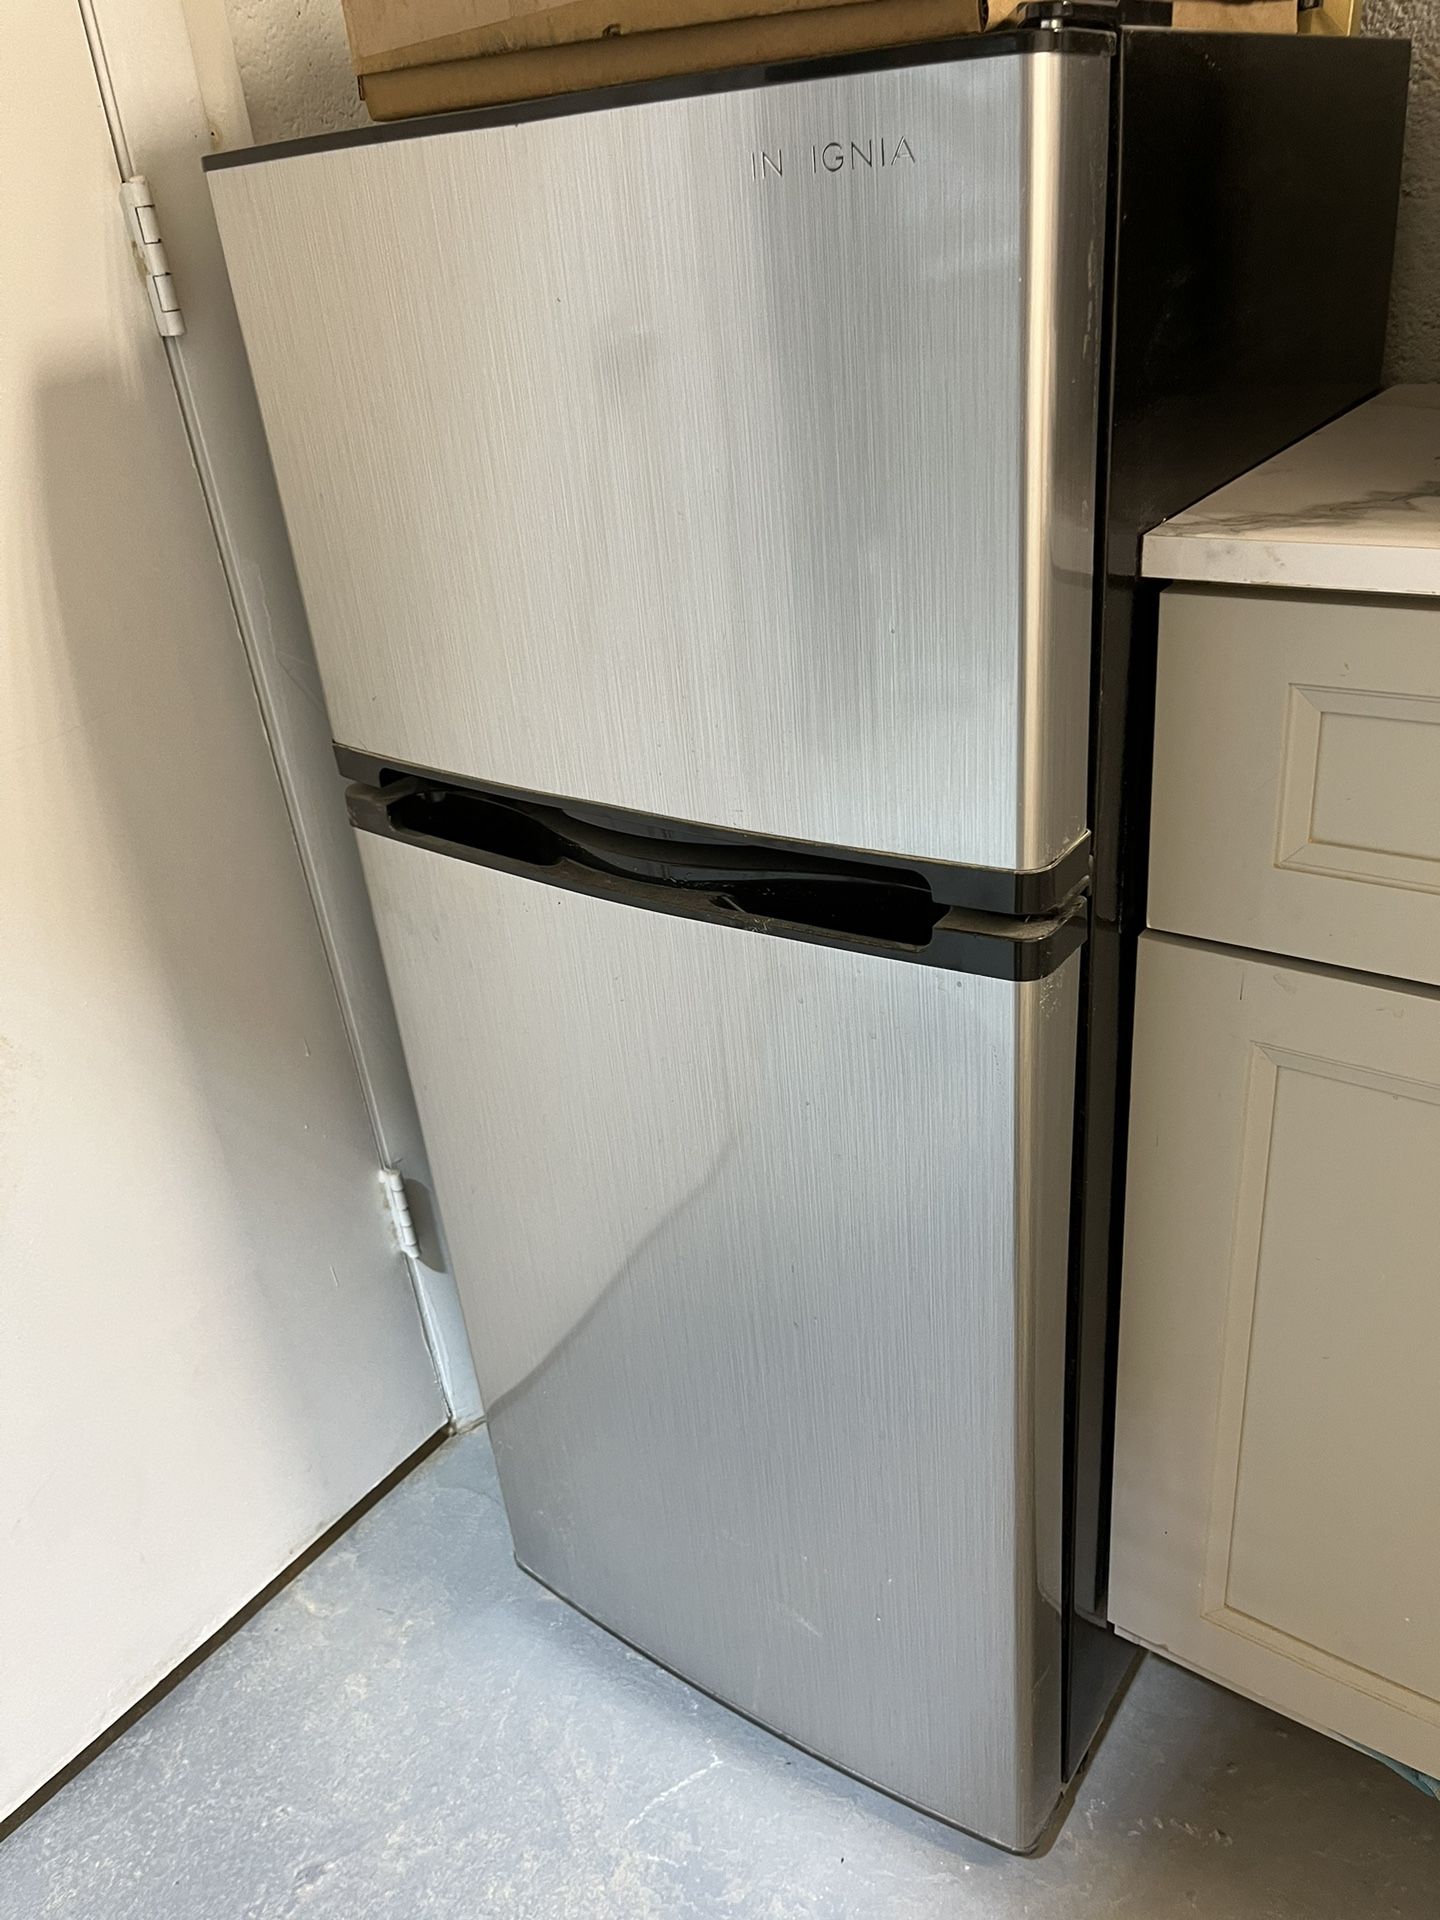 Insignia Top Freezer Refrigerator 